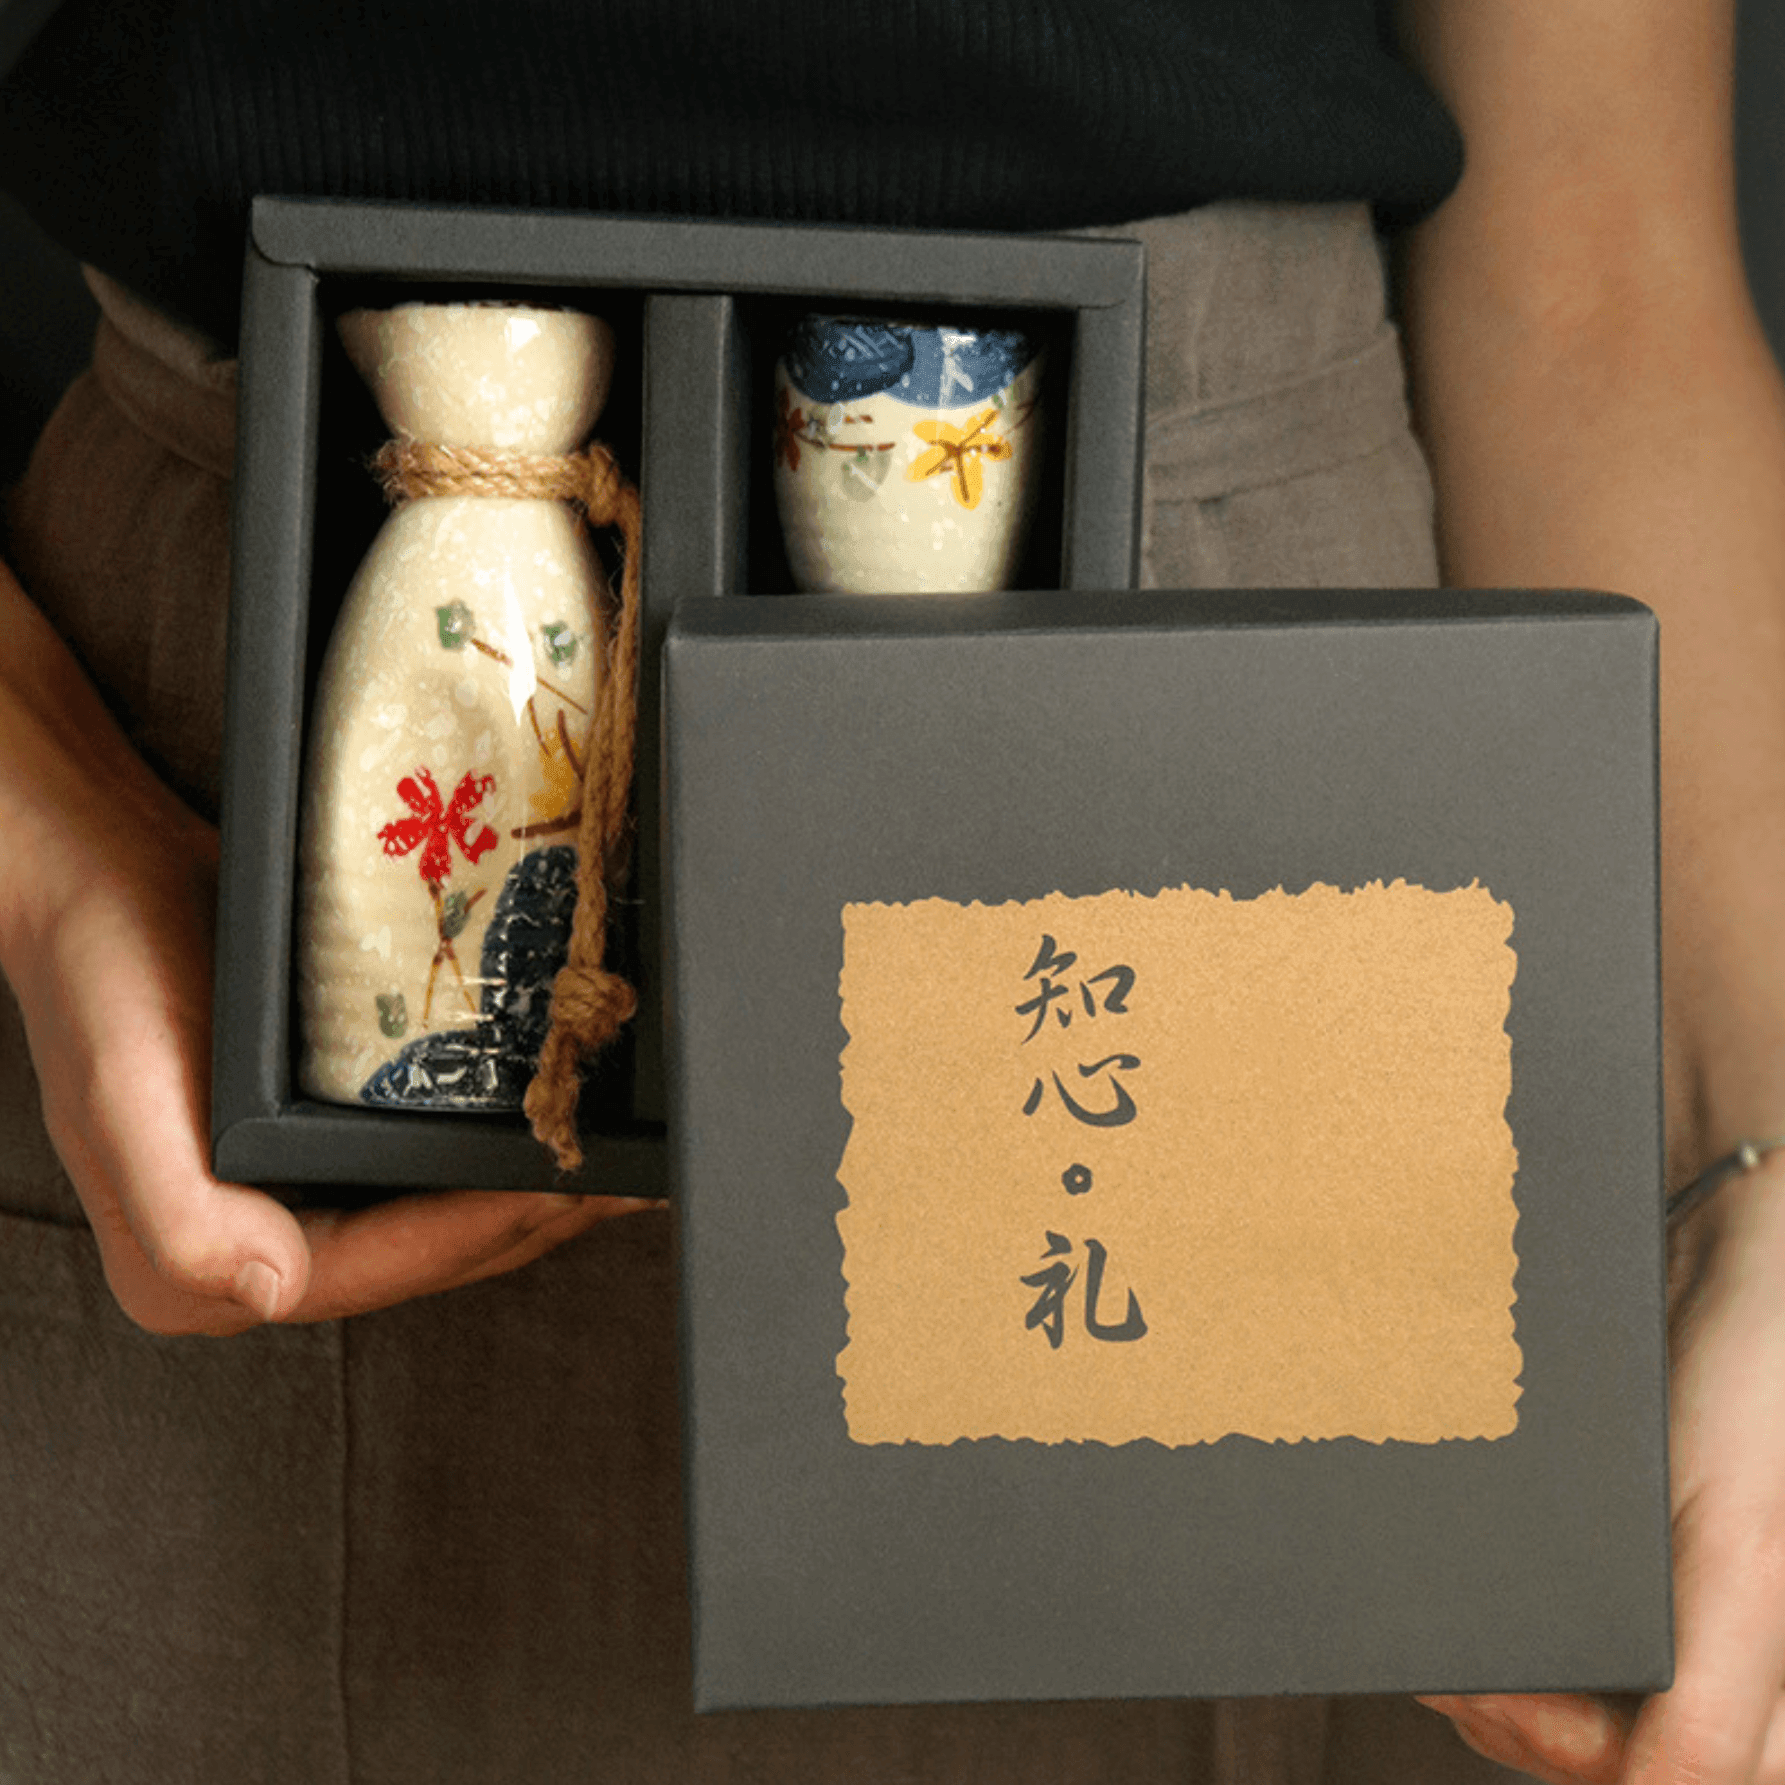 Japanese Sakura Sake Ceramic Flagon Sets - MASU